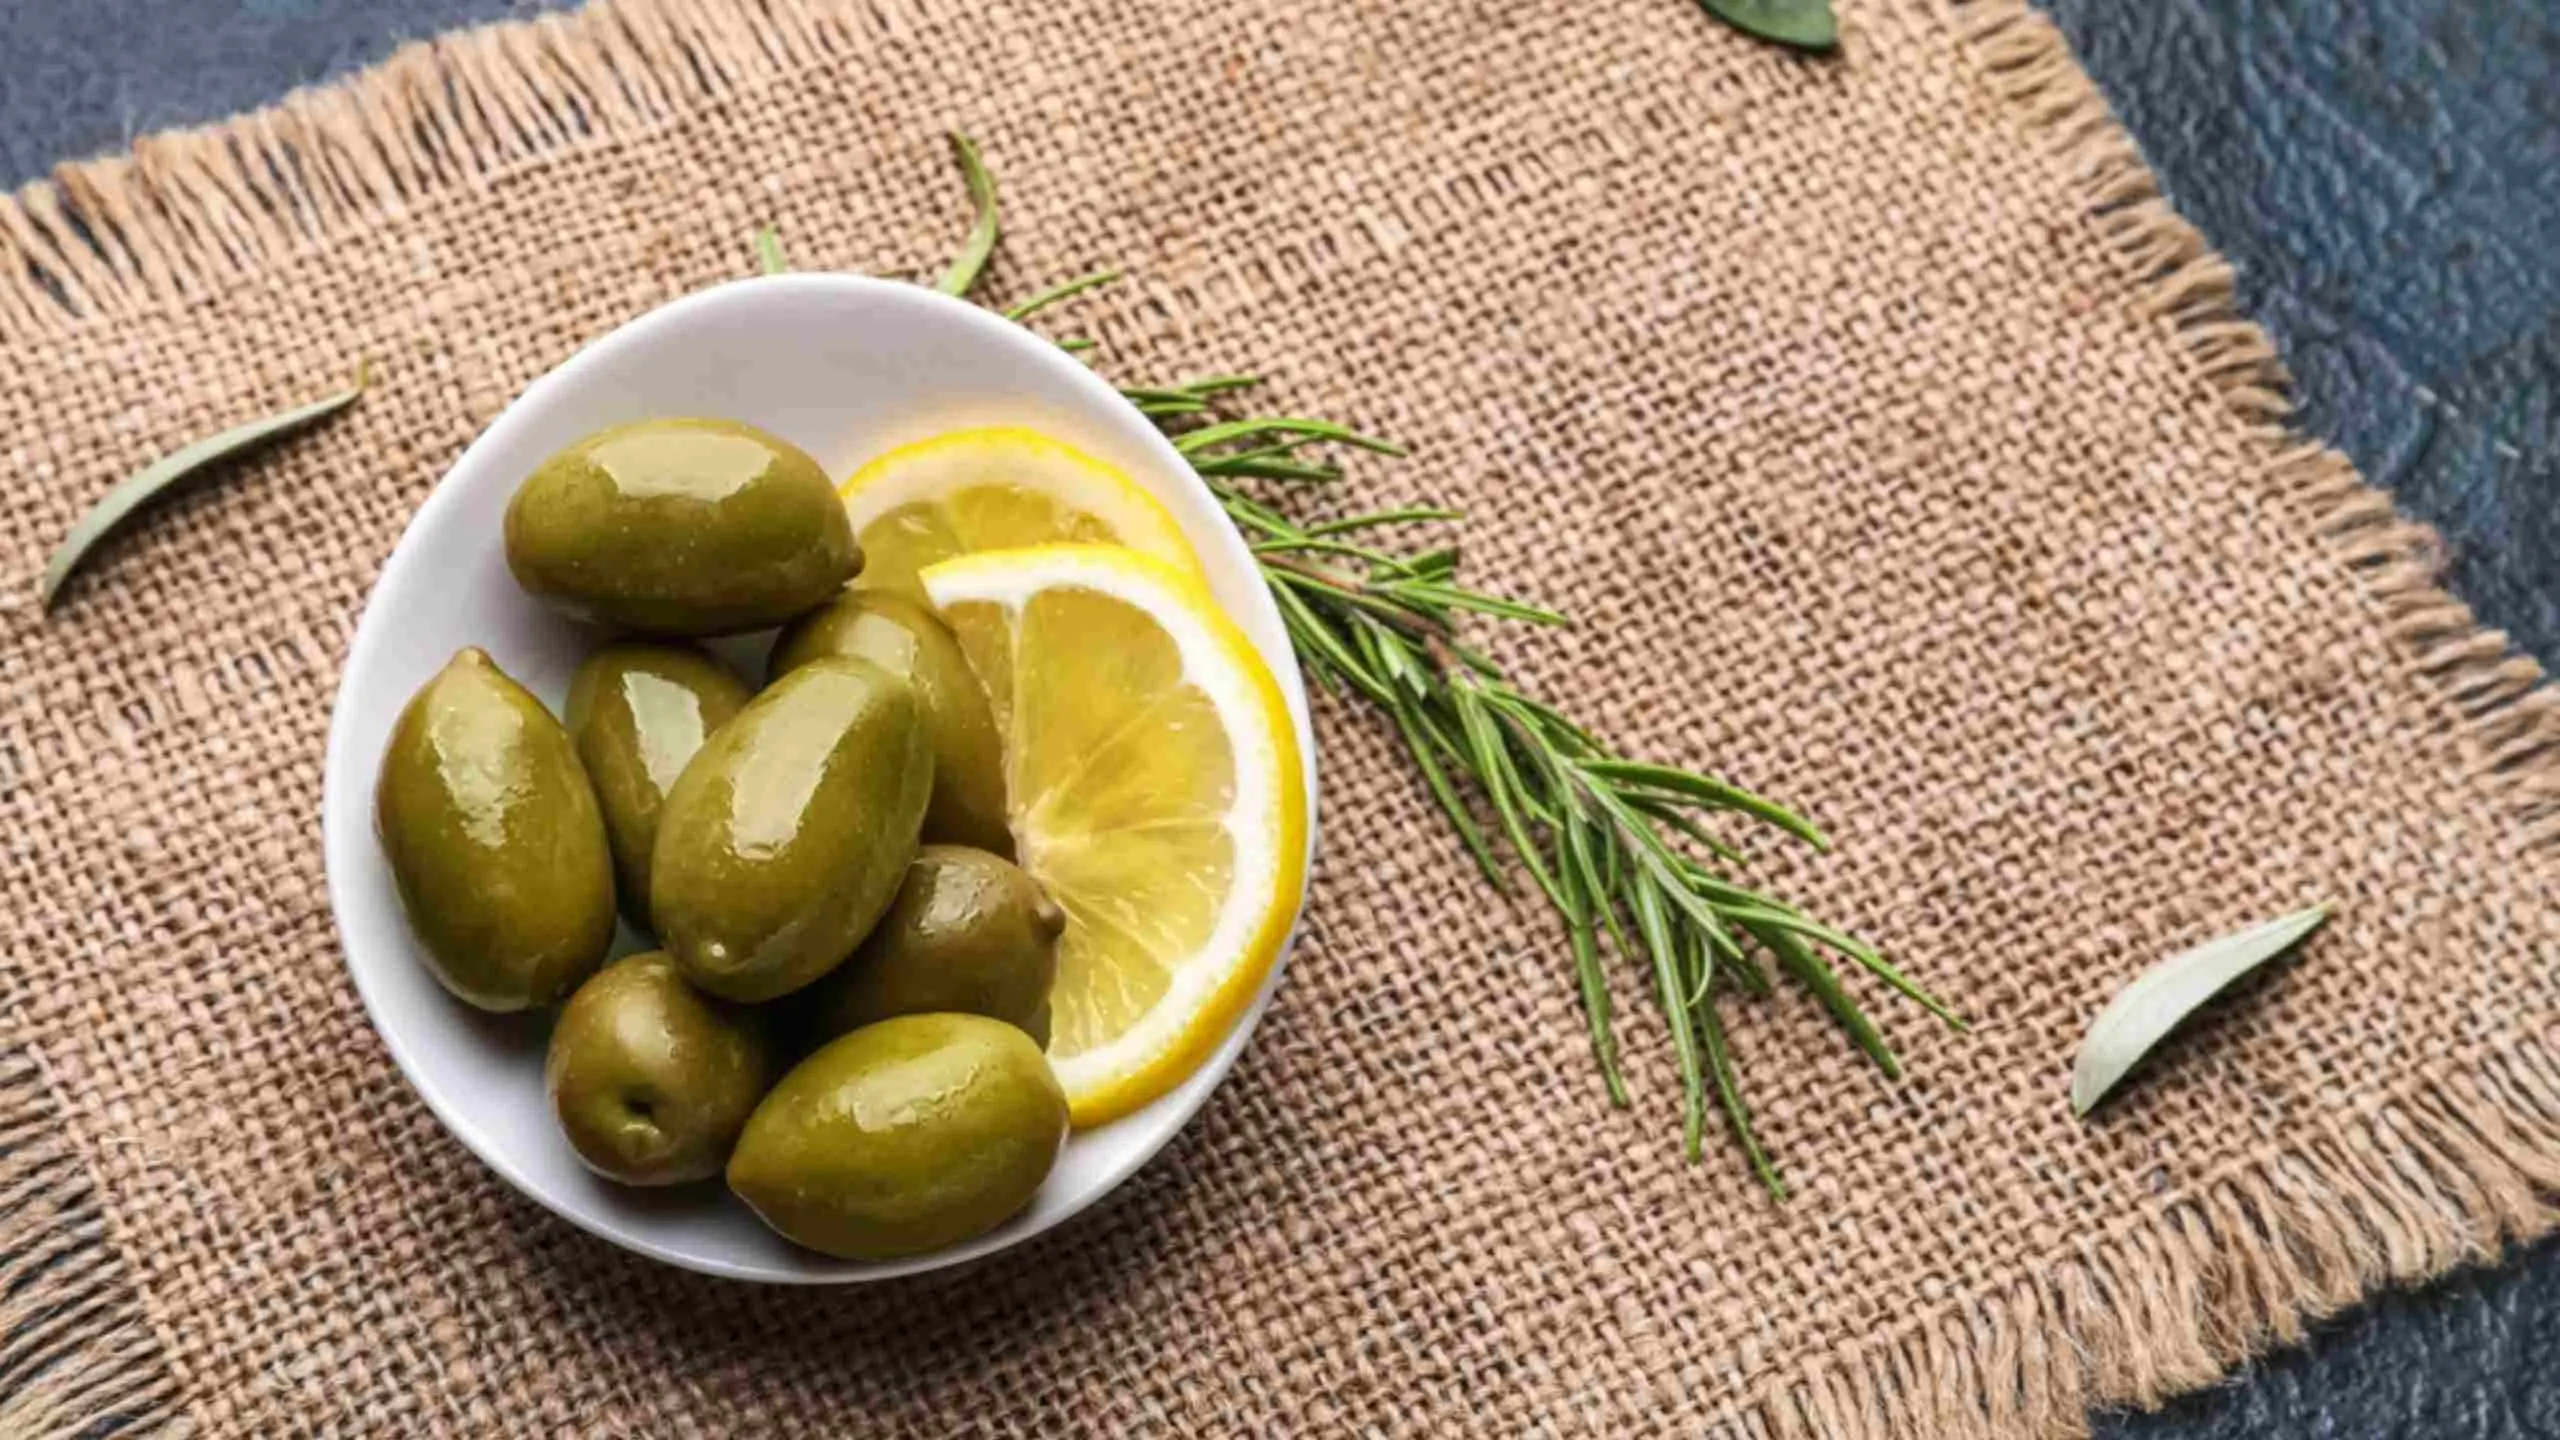 Roasted Olives And Lemons Recipe